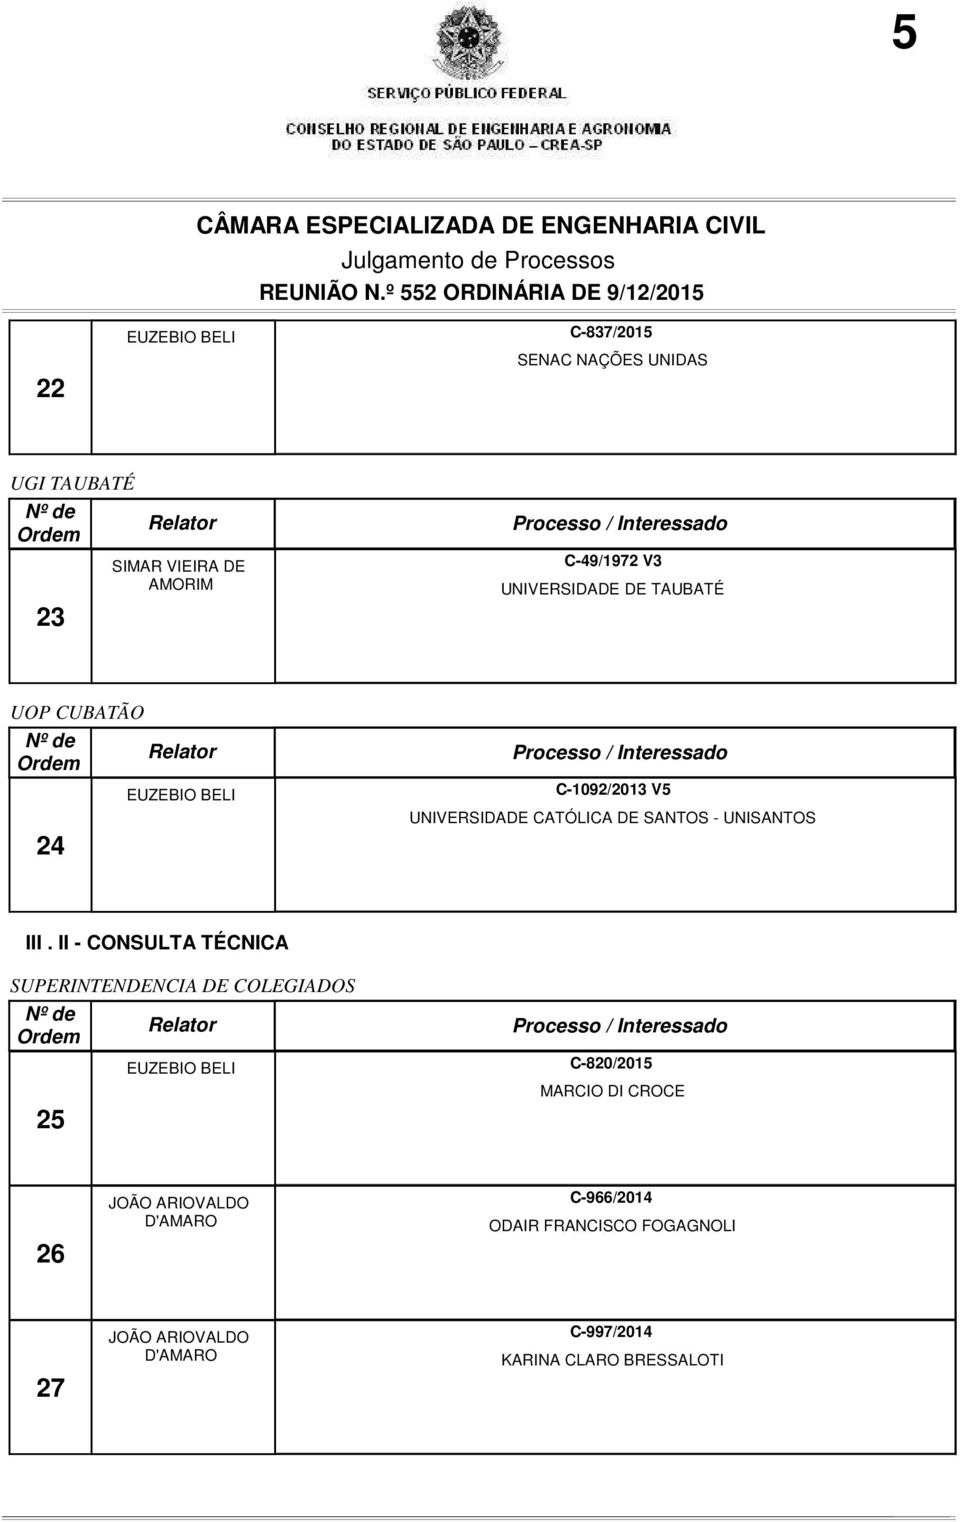 II - CONSULTA TÉCNICA SUPERINTENDENCIA DE COLEGIADOS 25 C-820/2015 MARCIO DI CROCE 26 JOÃO